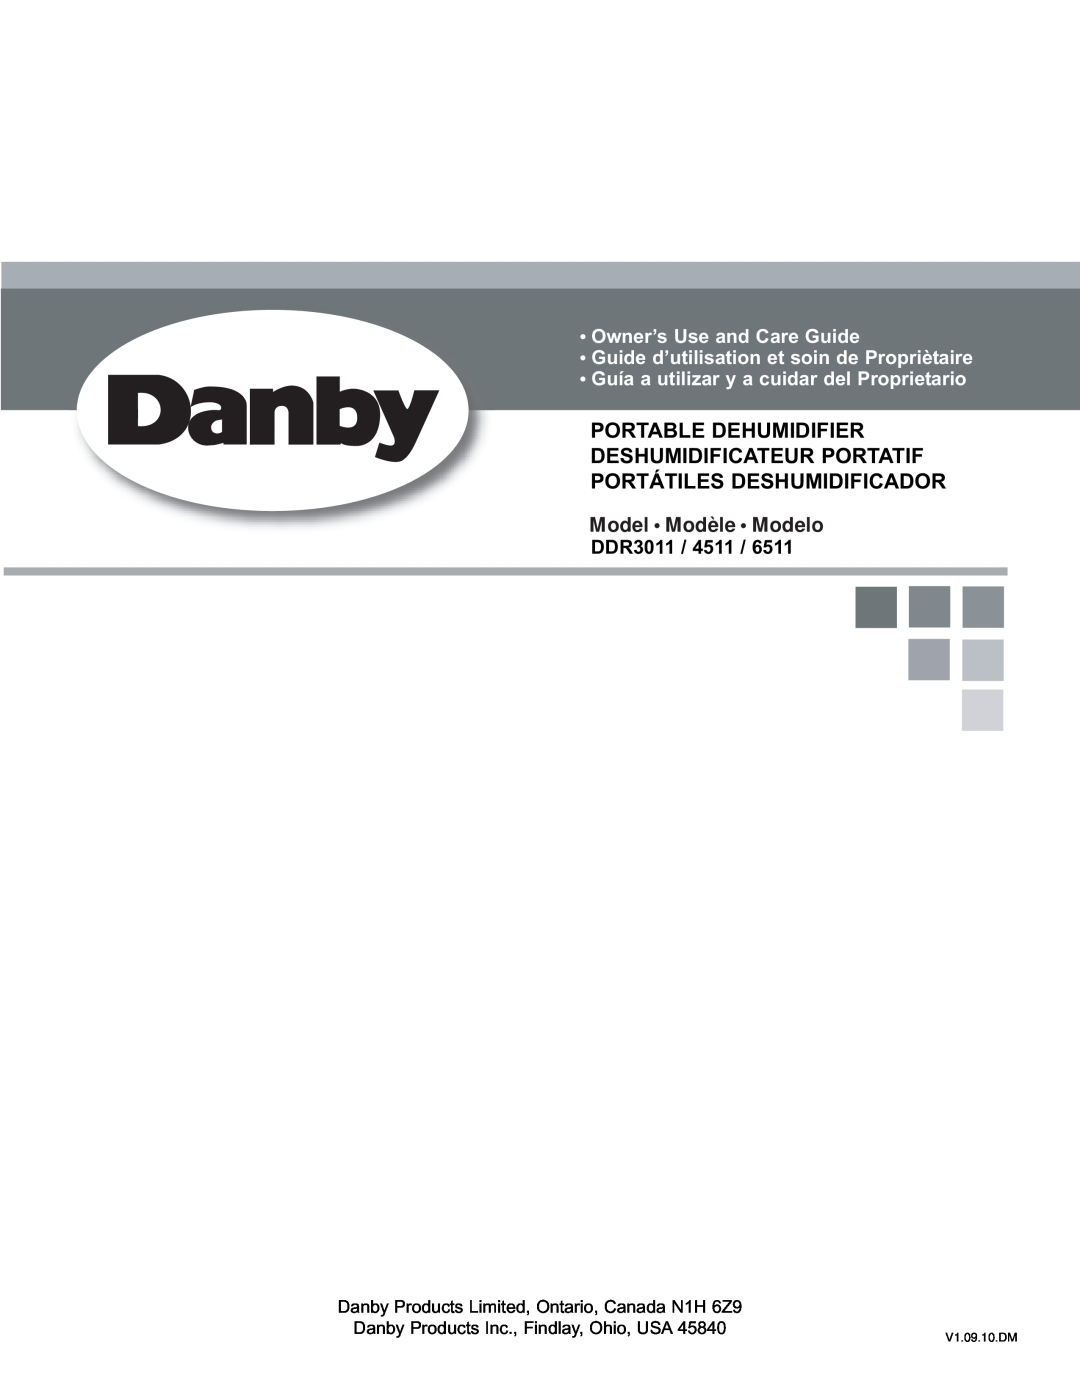 Danby DDR6511 manual Model Modèle Modelo, Owner’s Use and Care Guide, Guide d’utilisation et soin de Propriètaire, DDR3011 